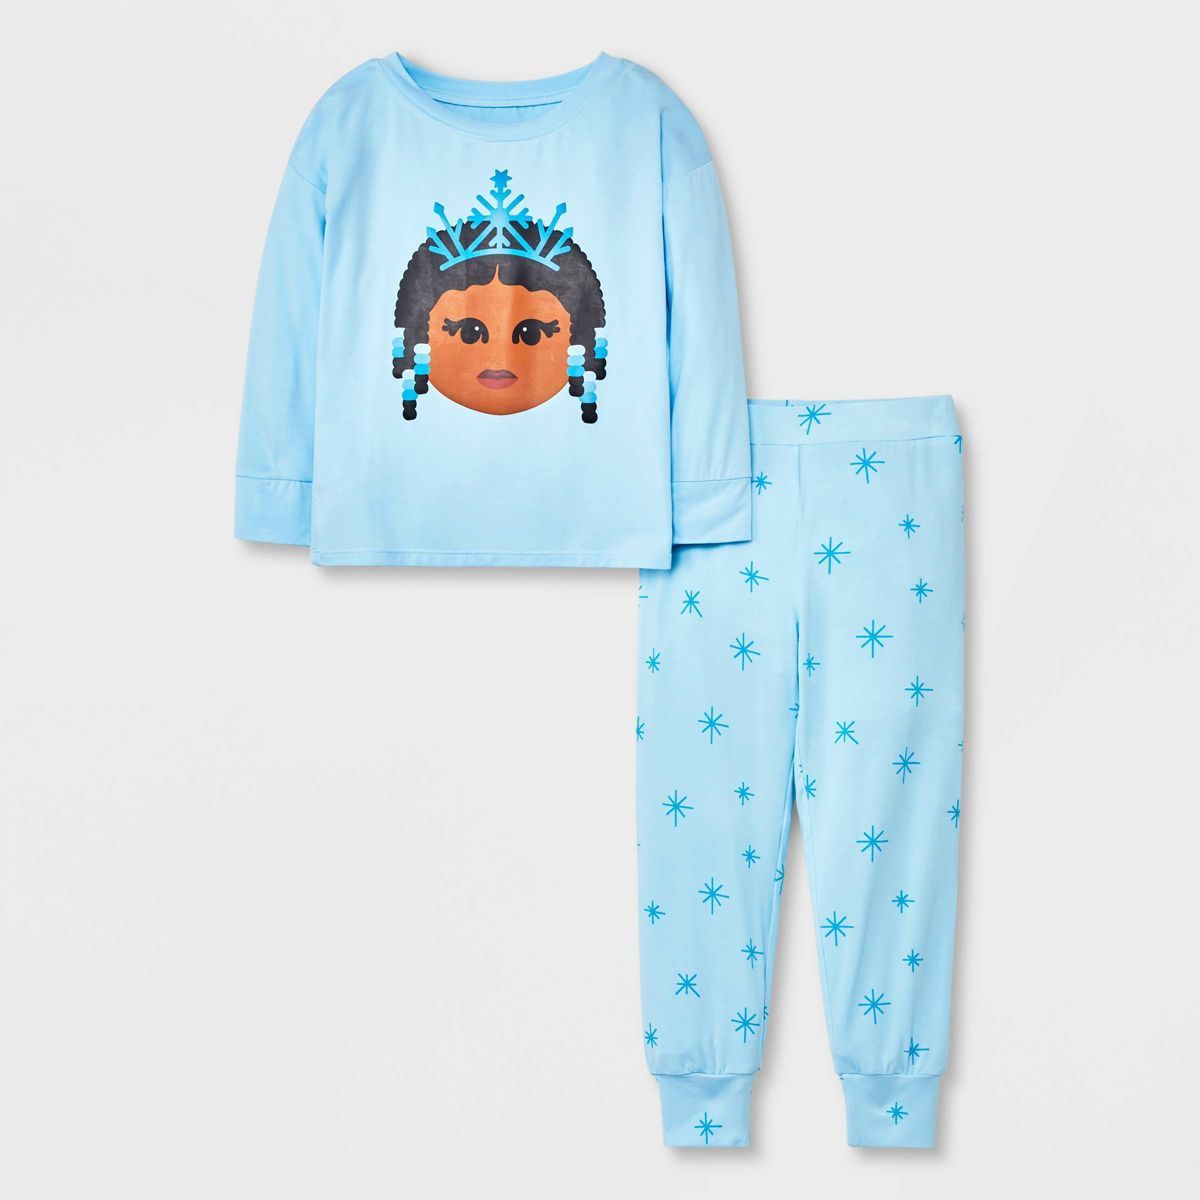 Elle Olivia Toddler Girls' 2pc Frost Pajama Set - Blue | Target